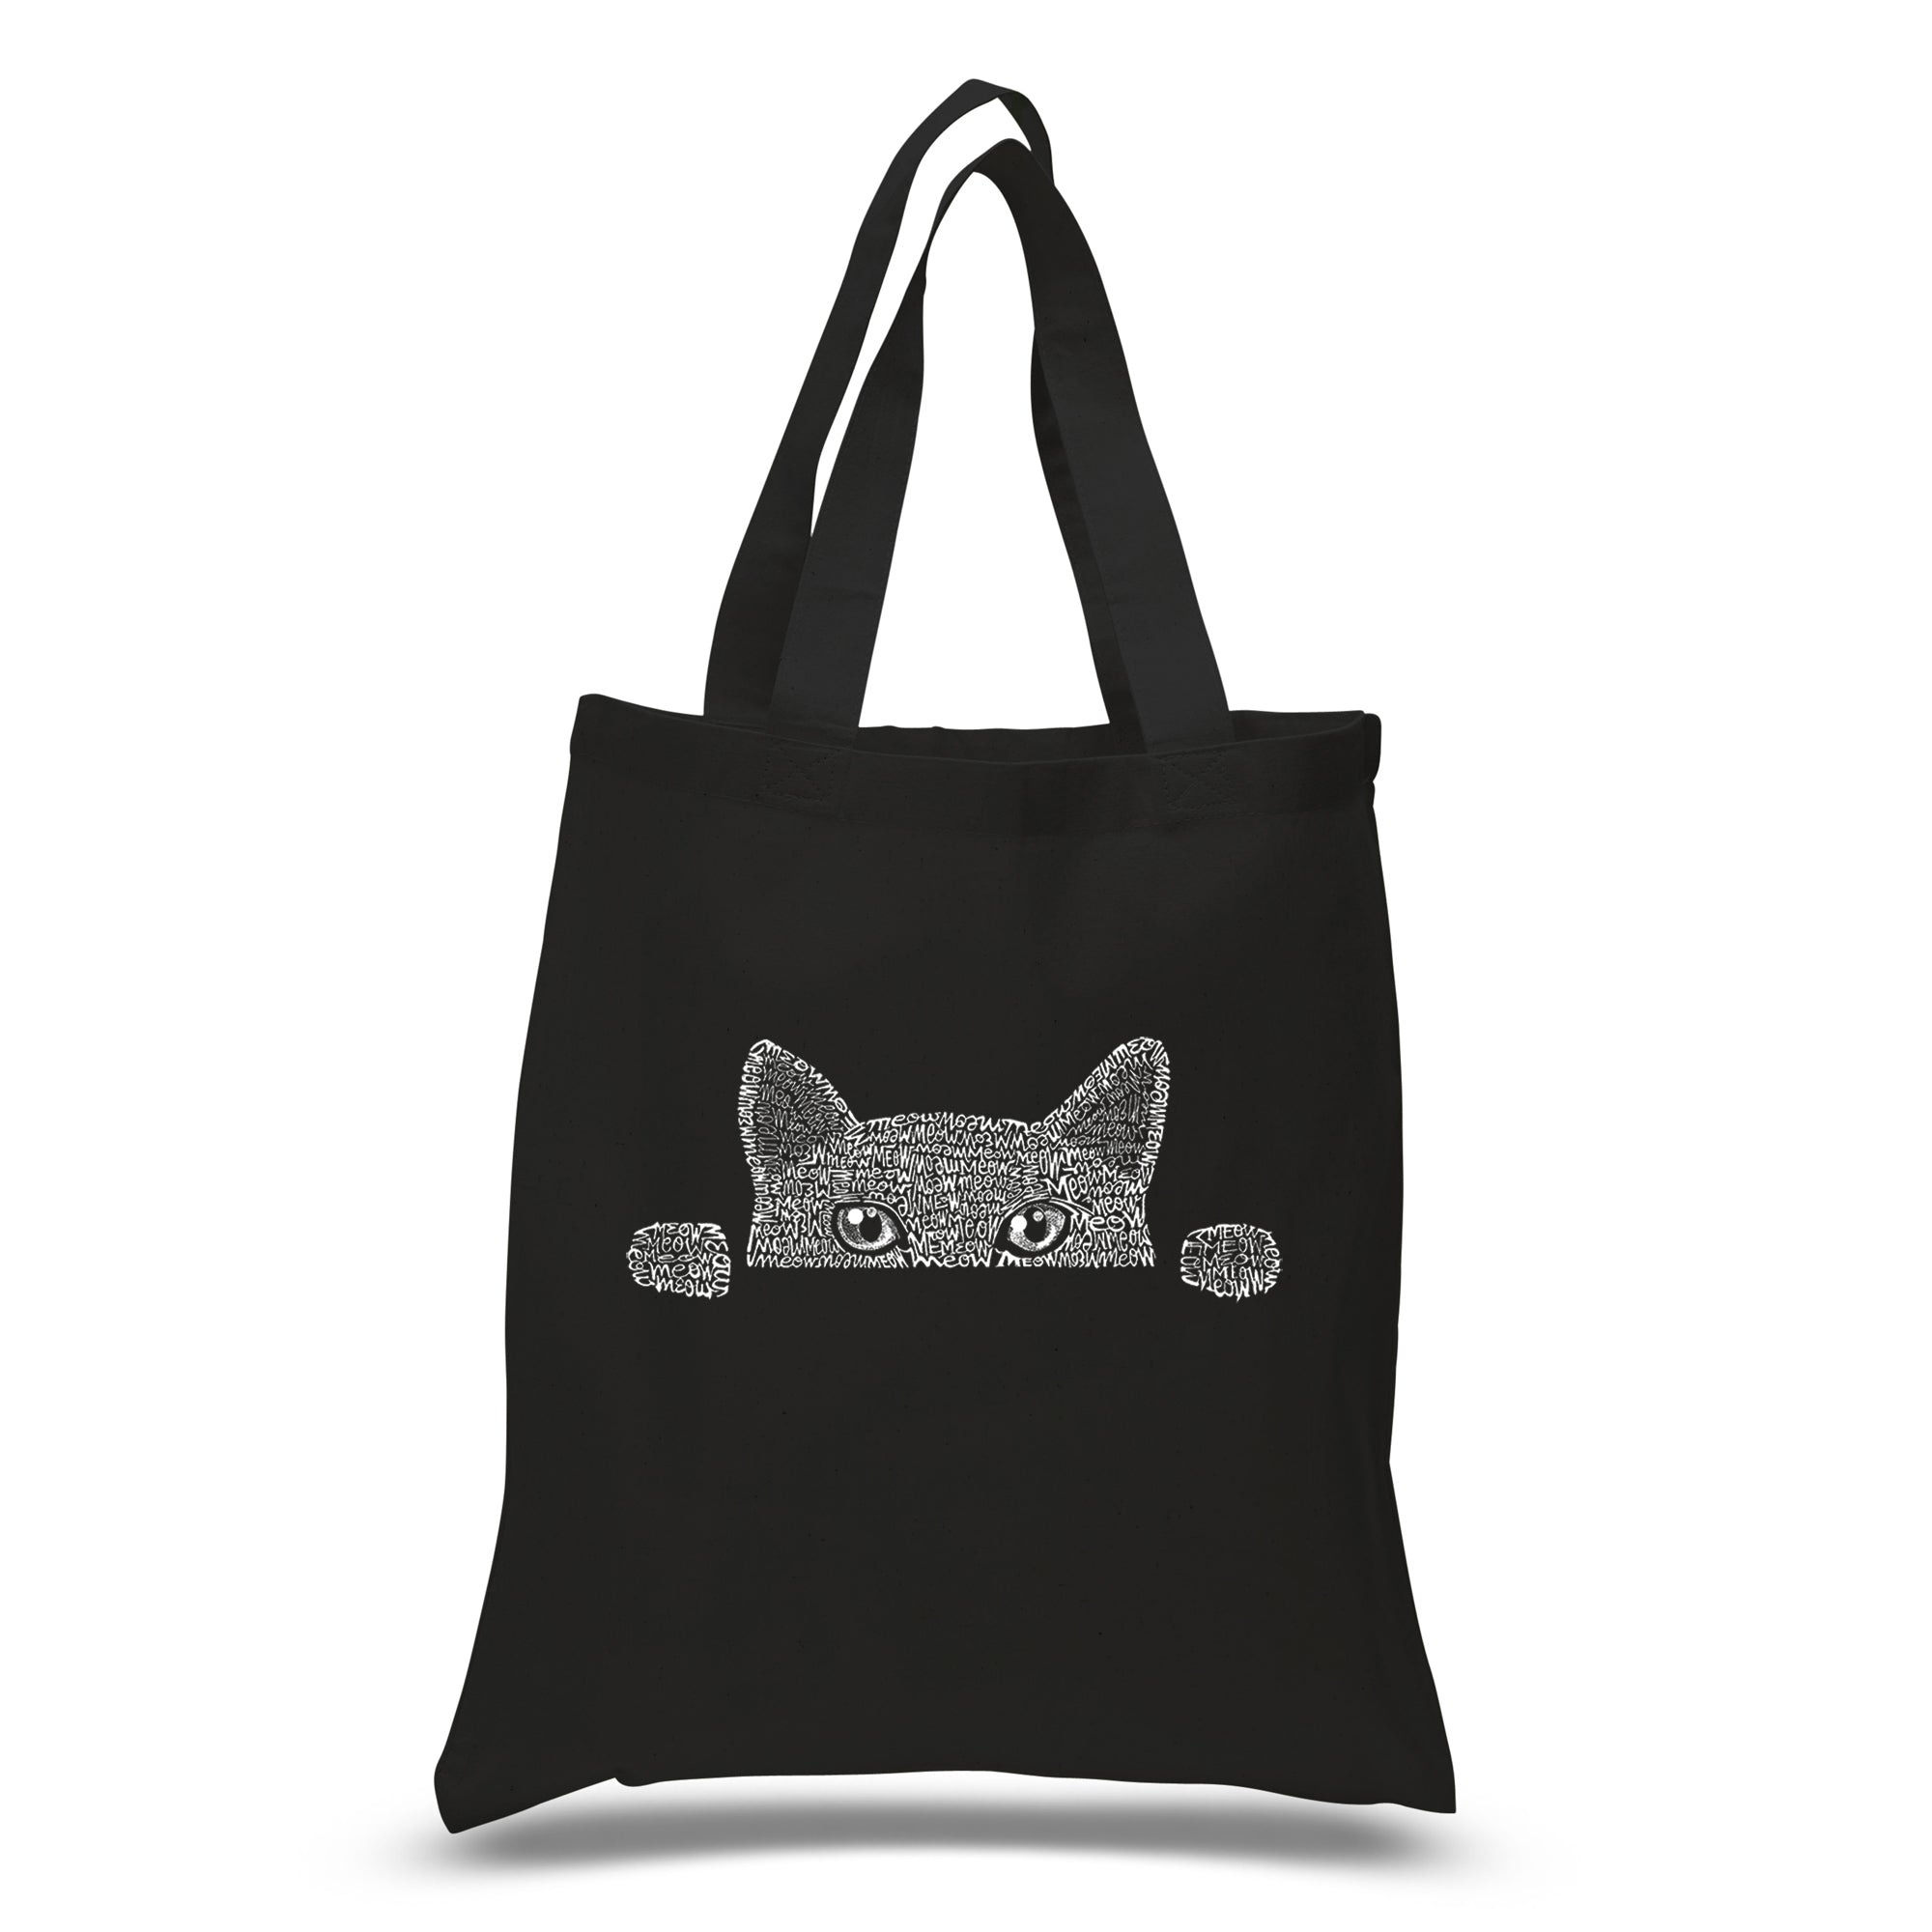 Peeking Cat - Small Word Art Tote Bag - Small - Navy